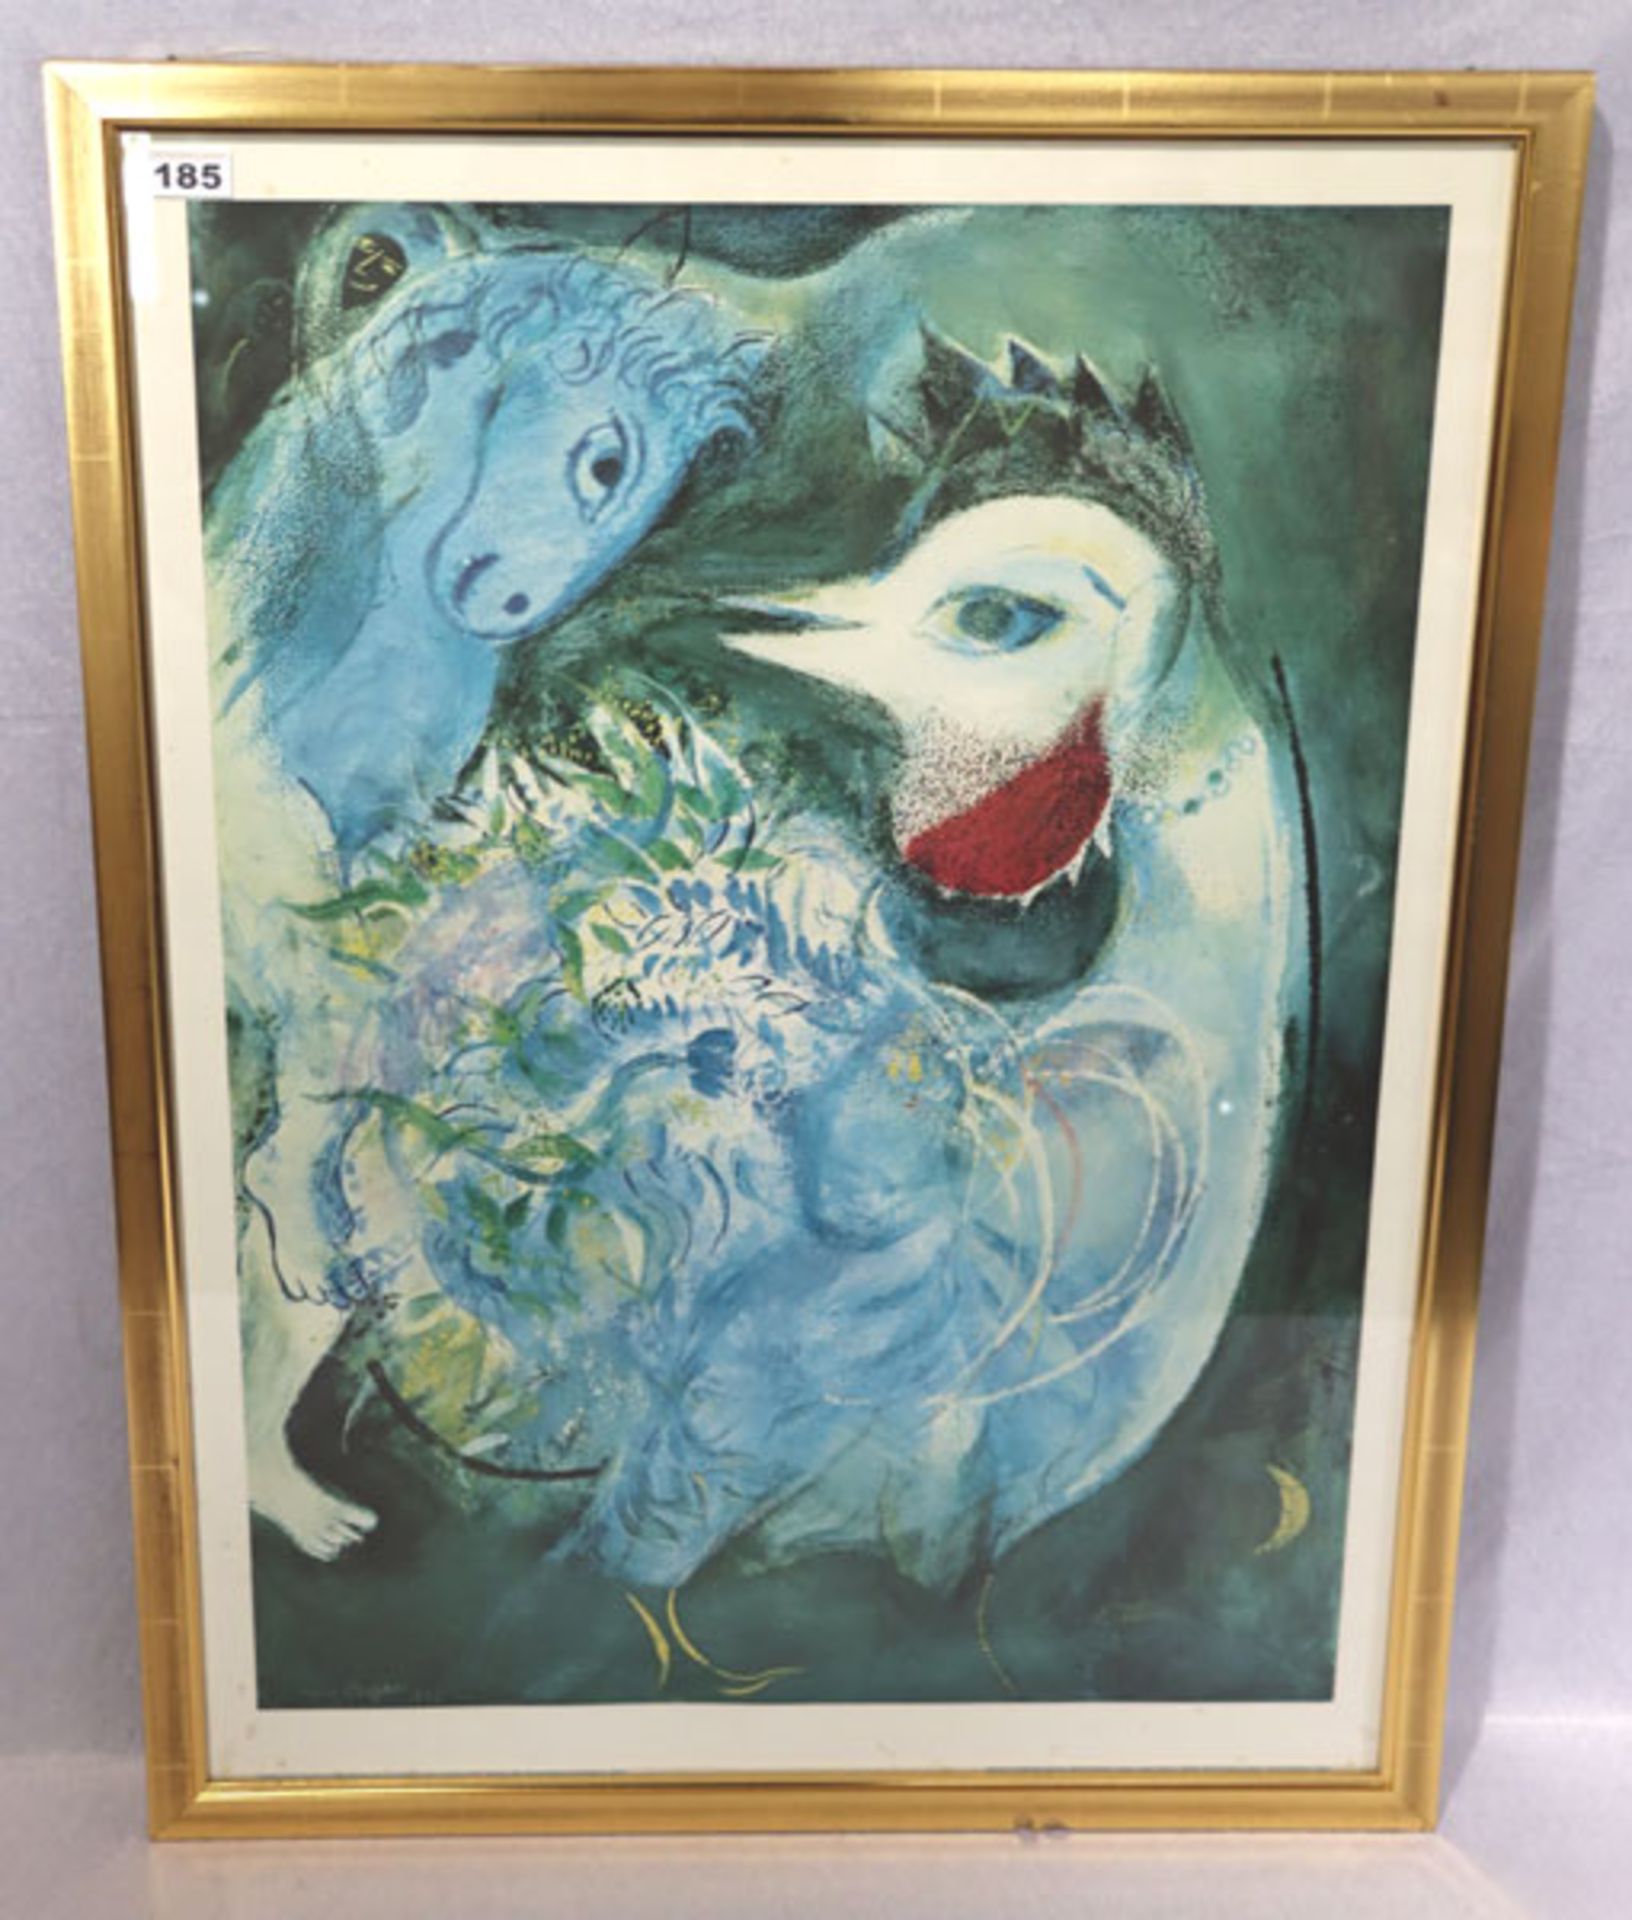 Plakat nach Marc Chagall 'Die blühende Feder', 1943, Blatt leicht fleckig, unter Glas gerahmt,